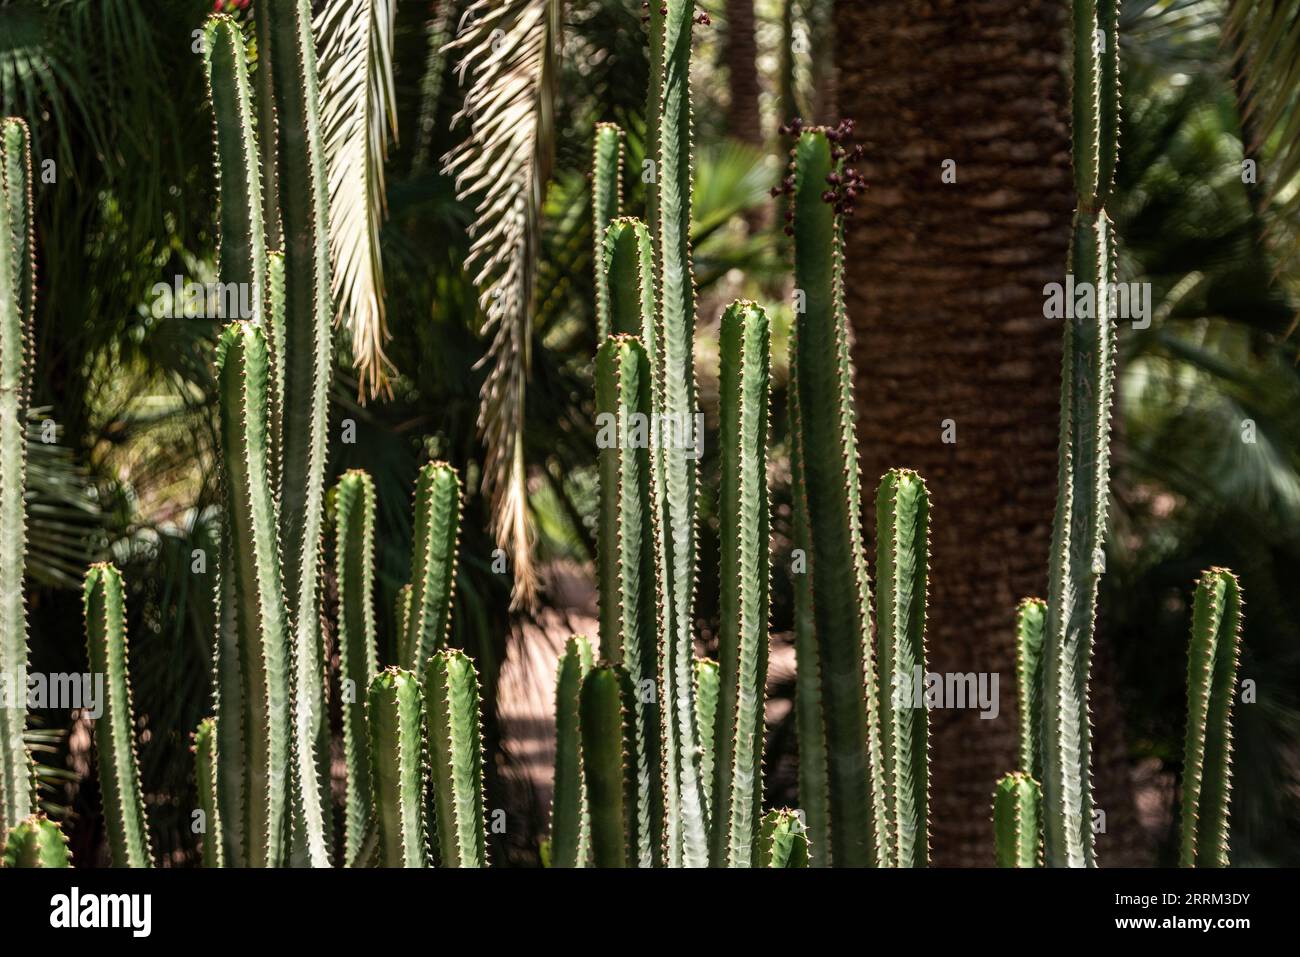 Beautfiul closeup of a Euphorbia Canariensis cactus in a park in Marrakech, Morocco Stock Photo